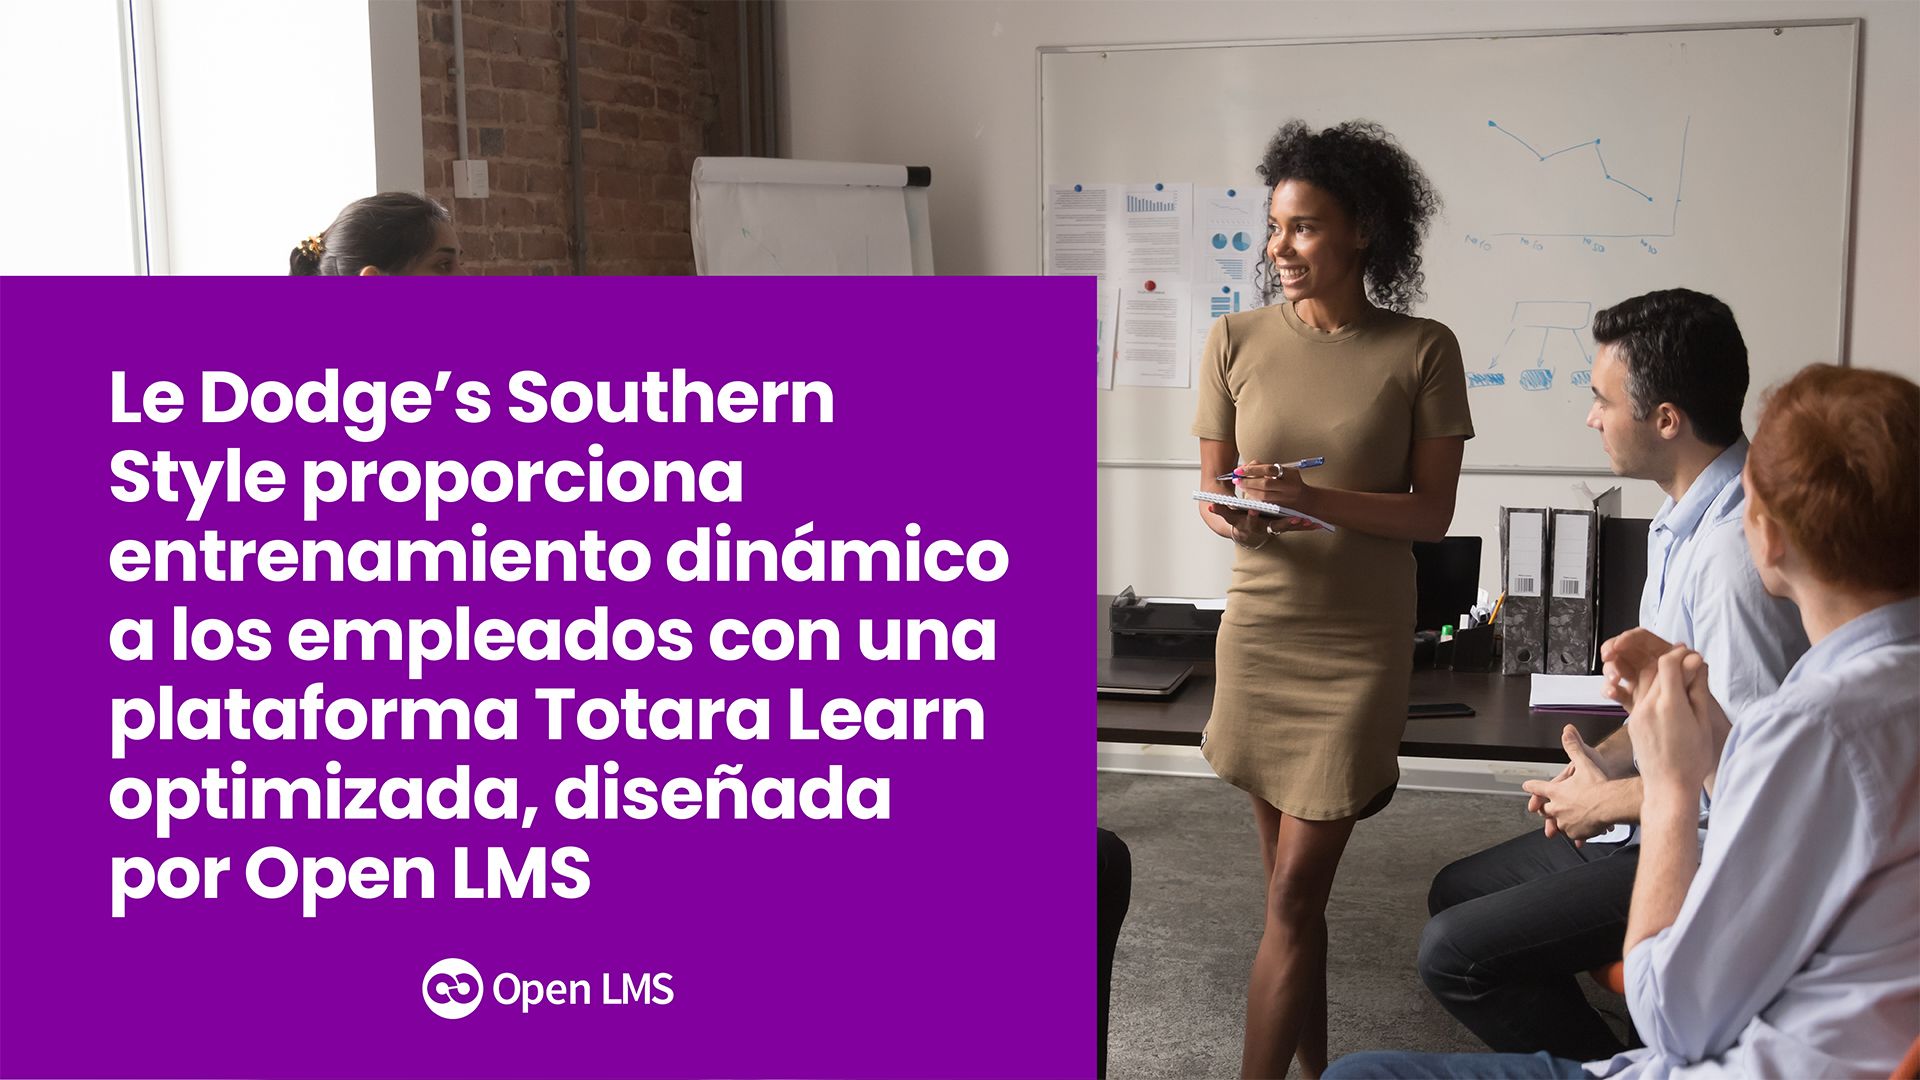 Dodge’s Southern Style proporciona entrenamiento dinámico a los empleados con una plataforma Totara Learn optimizada, diseñada por Open LMS